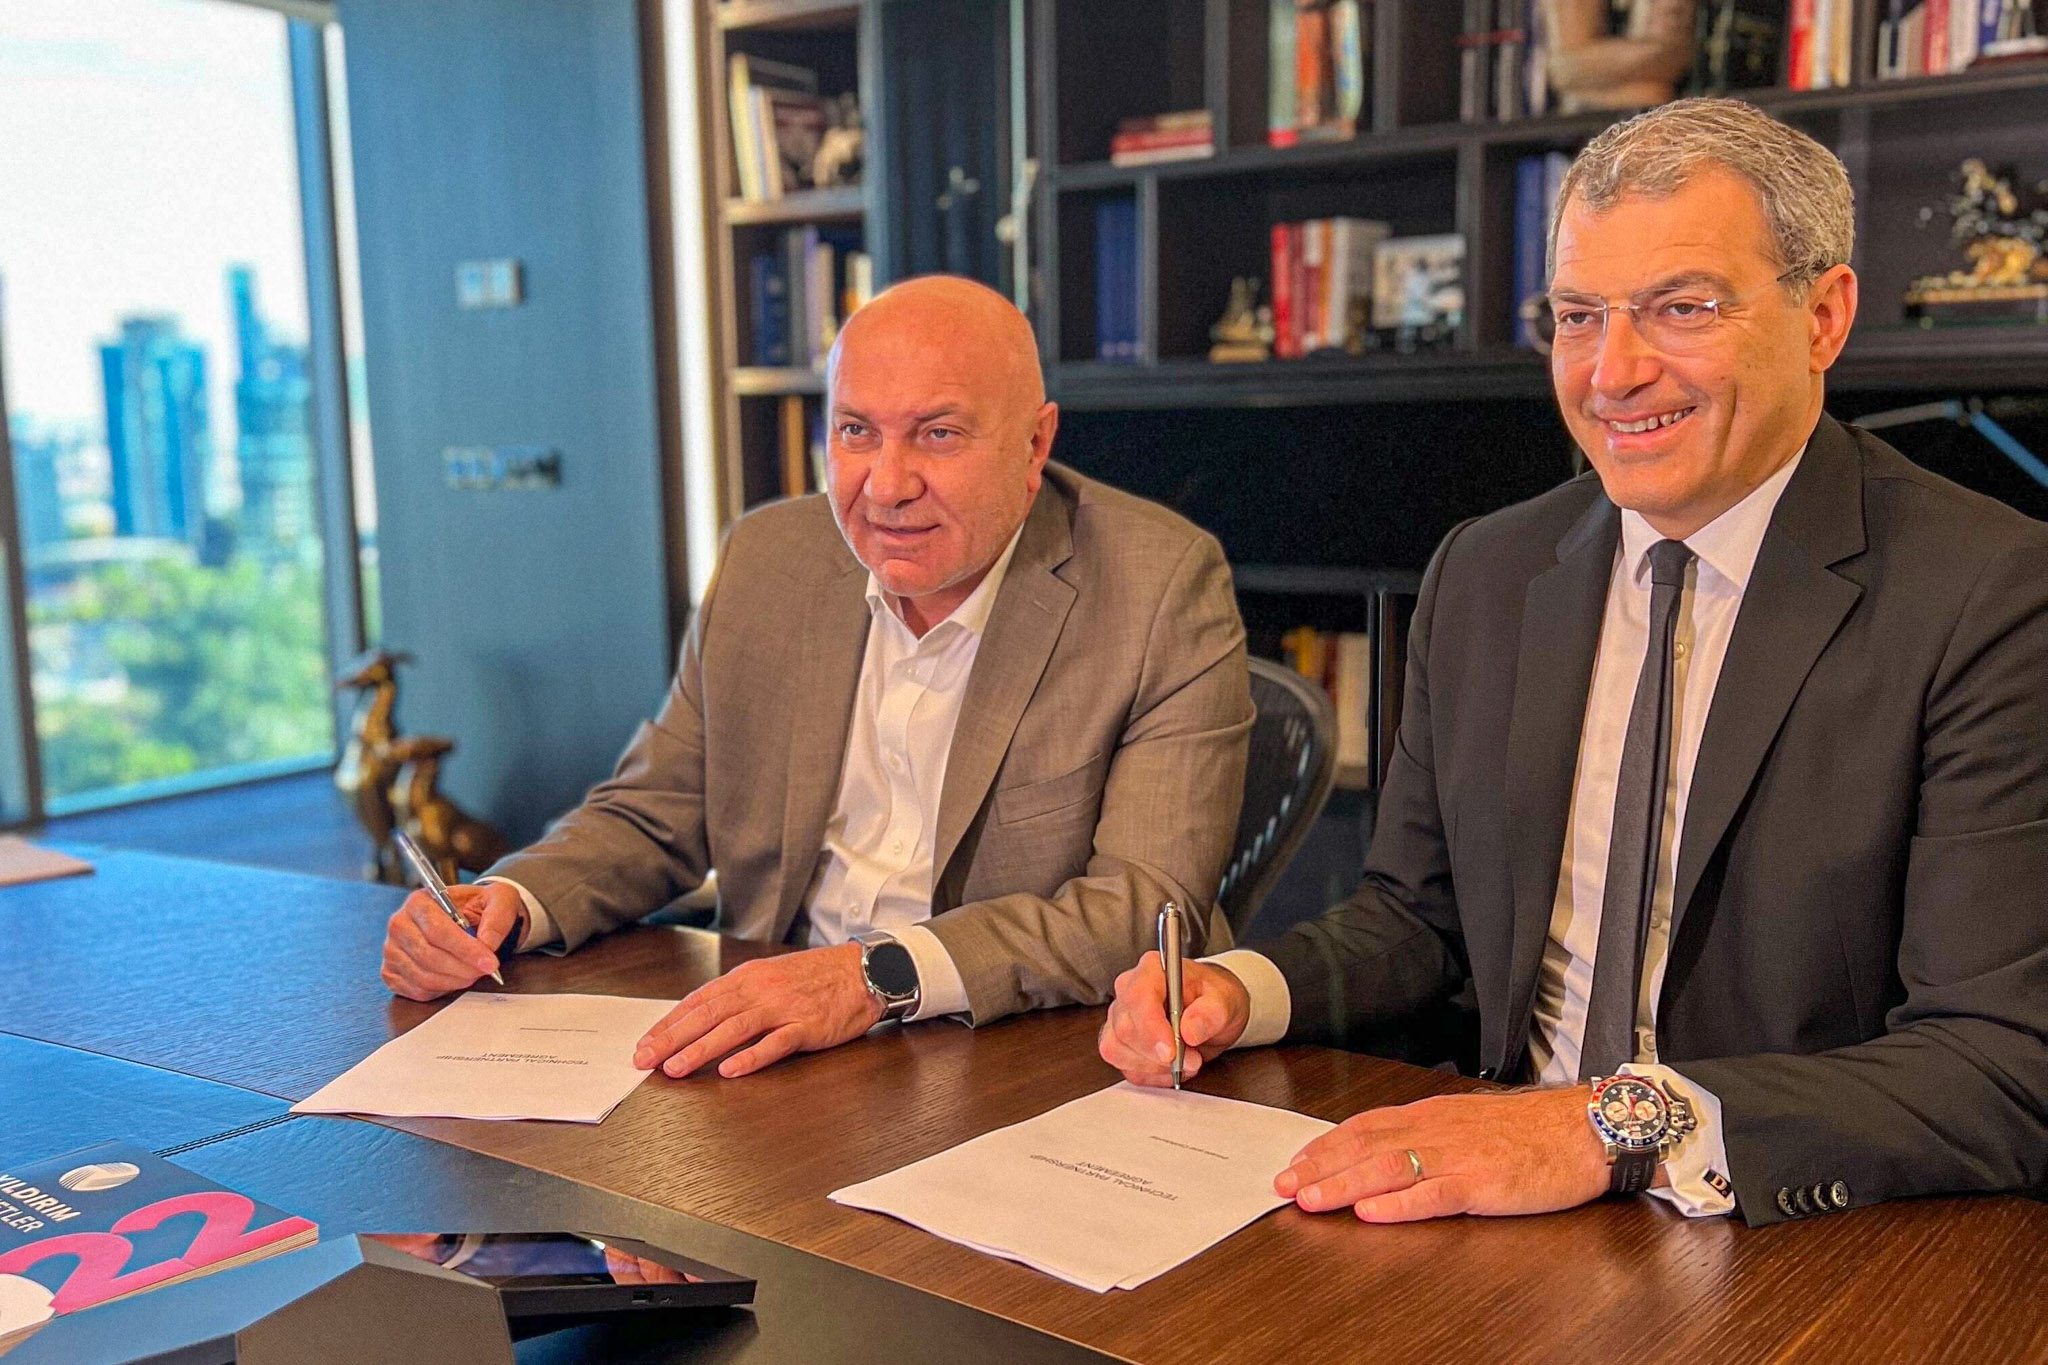 Yılport Samsunspor ve Toulouse FC İş Birliği Anlaşması İmzaladı